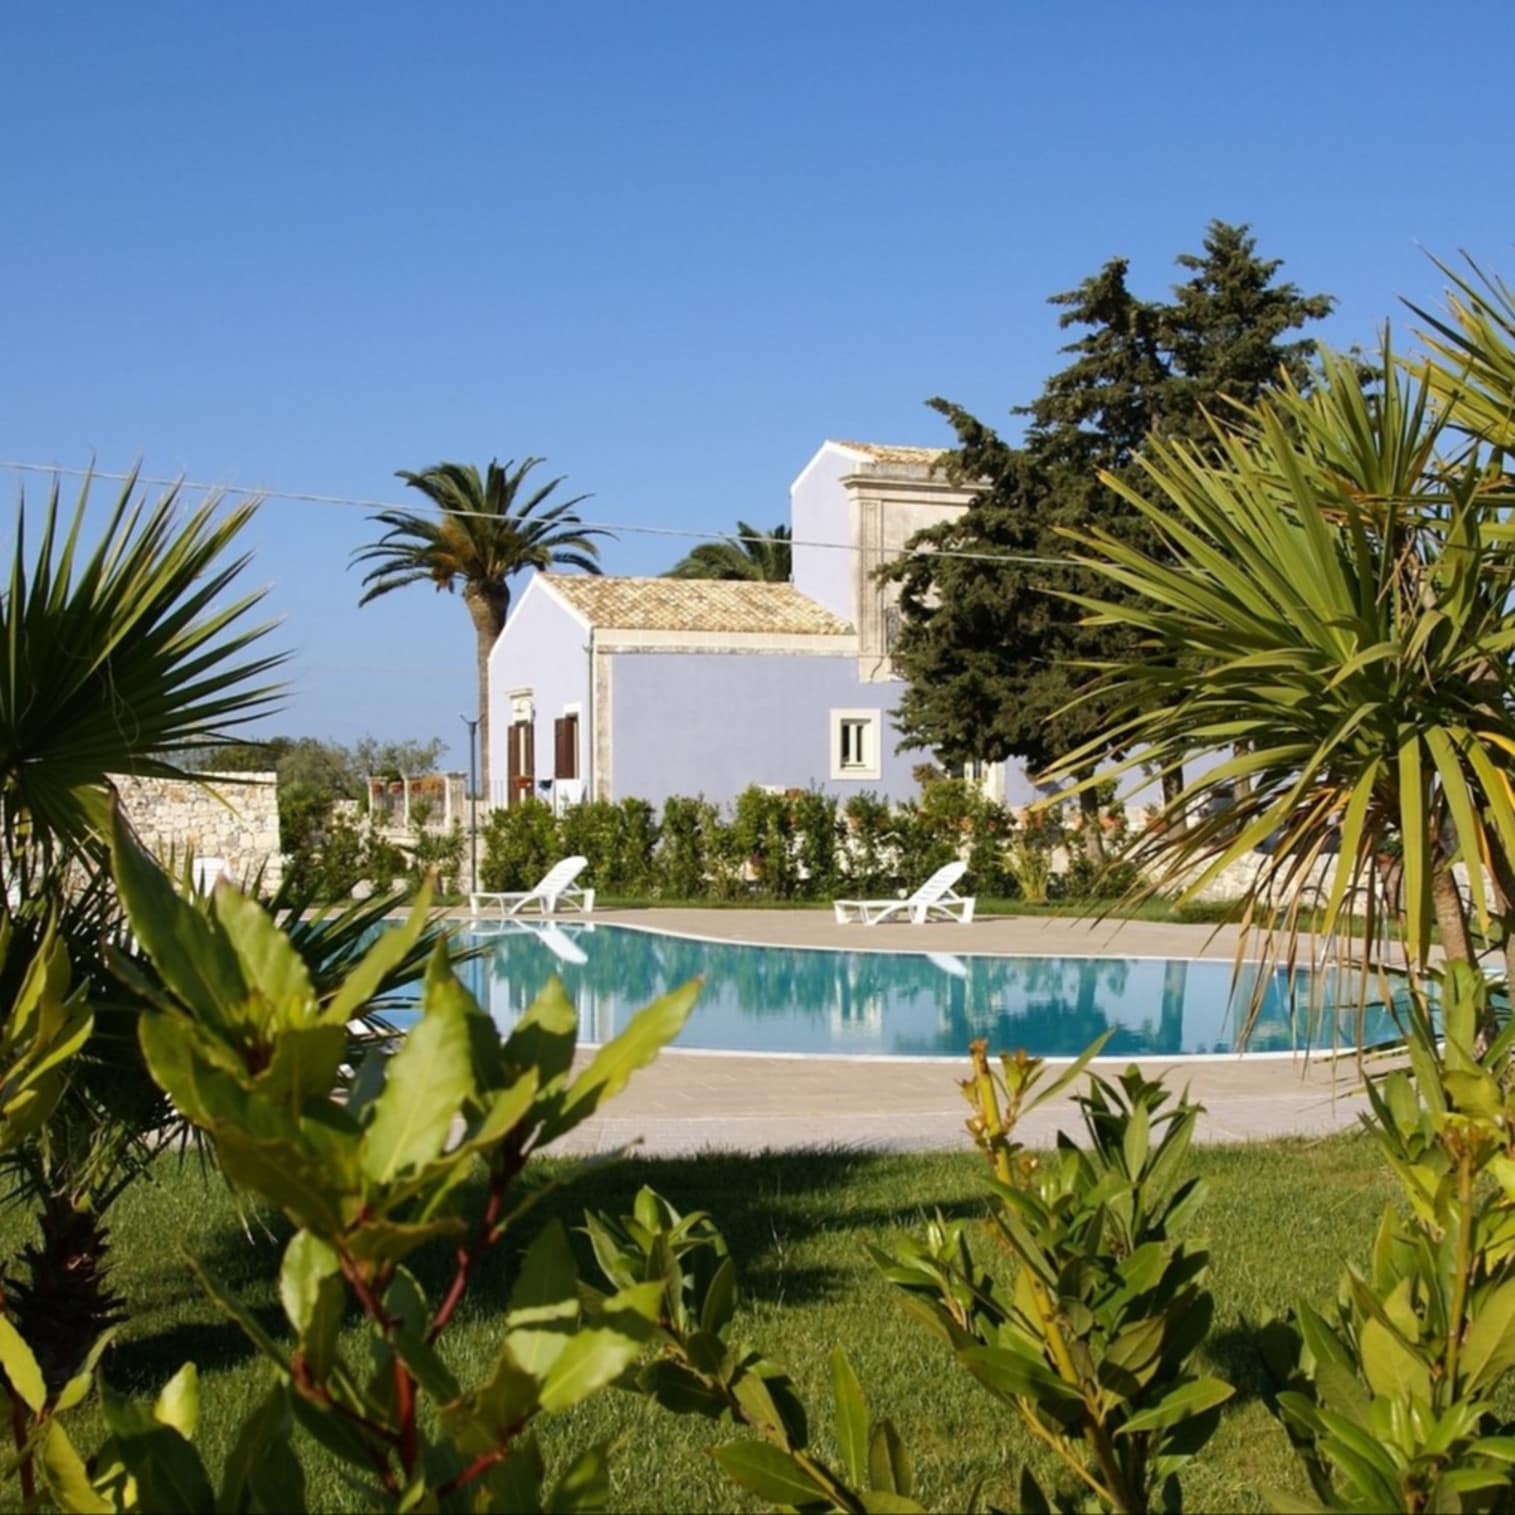 Villa avec piscine, jardin arboré, villa Rome